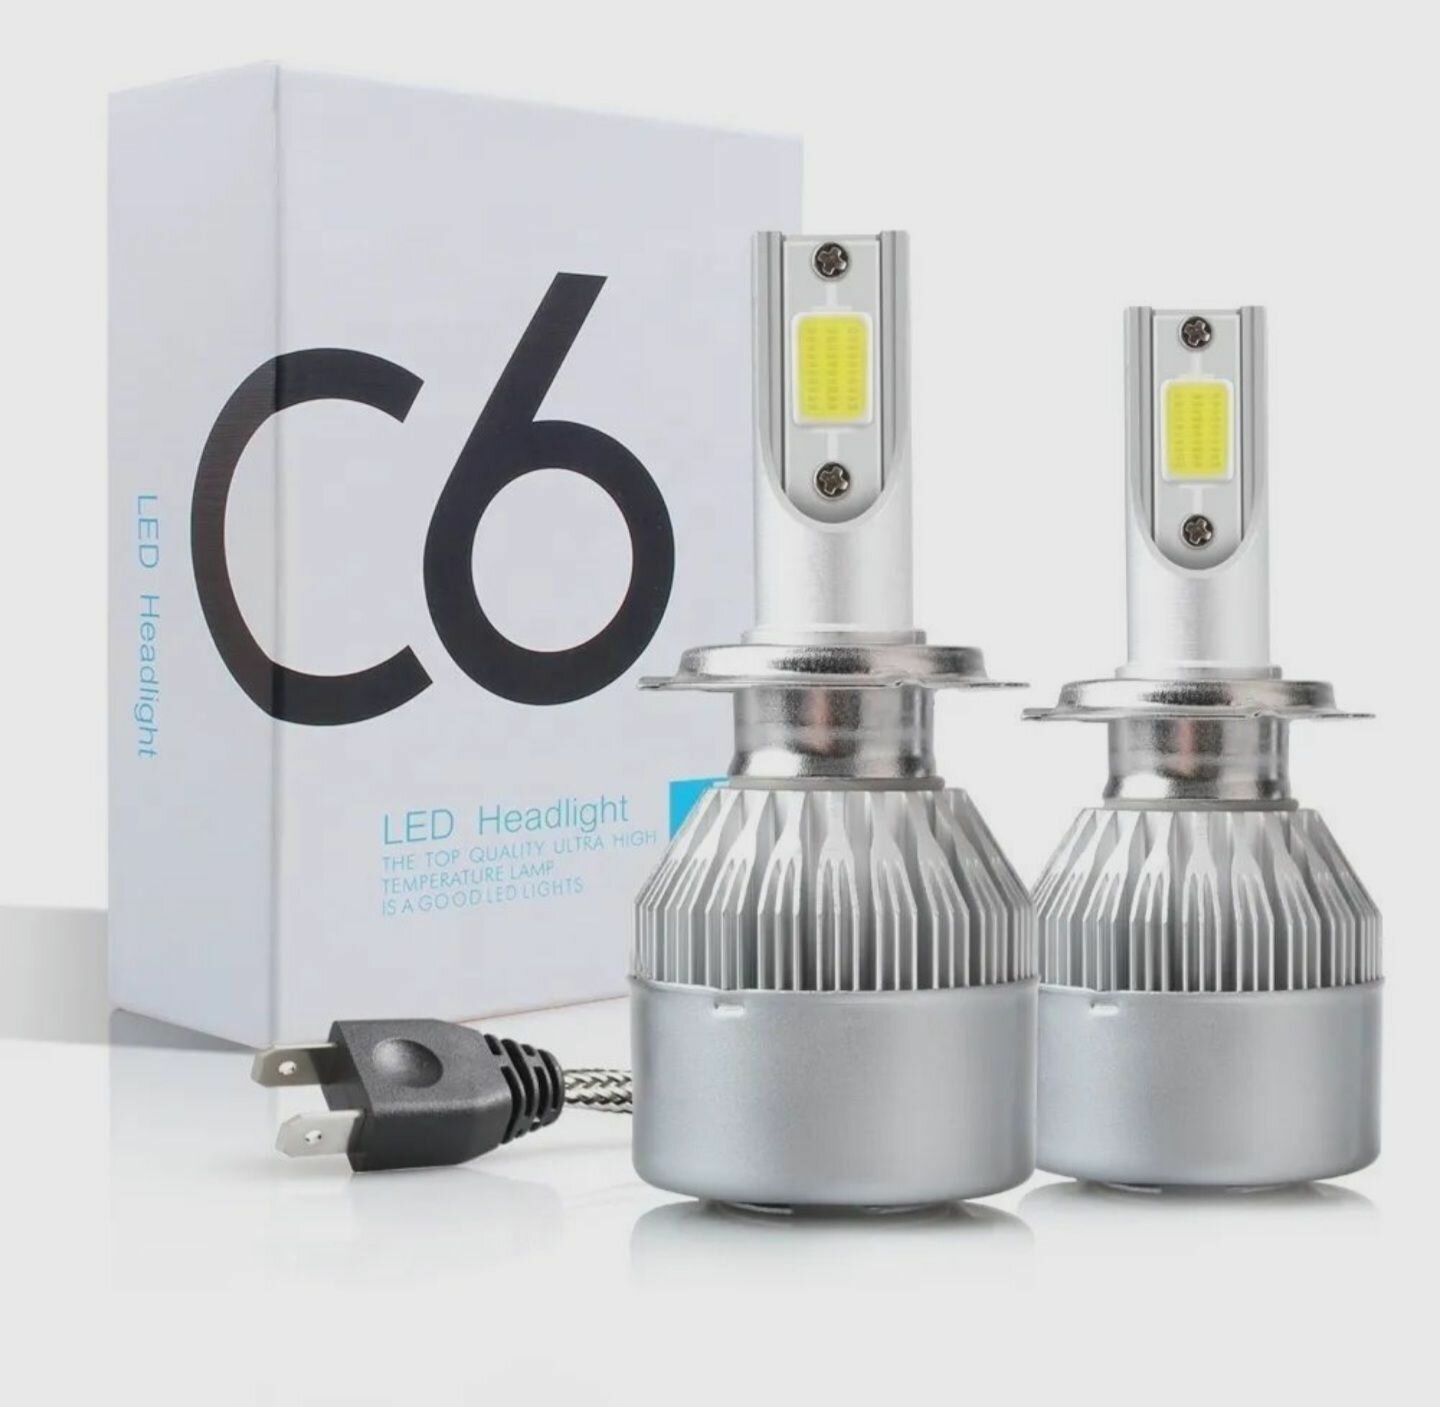 Лампа светодиодная LED C6 цоколь H7, 6000К, комплект 2шт, для головного света и птф